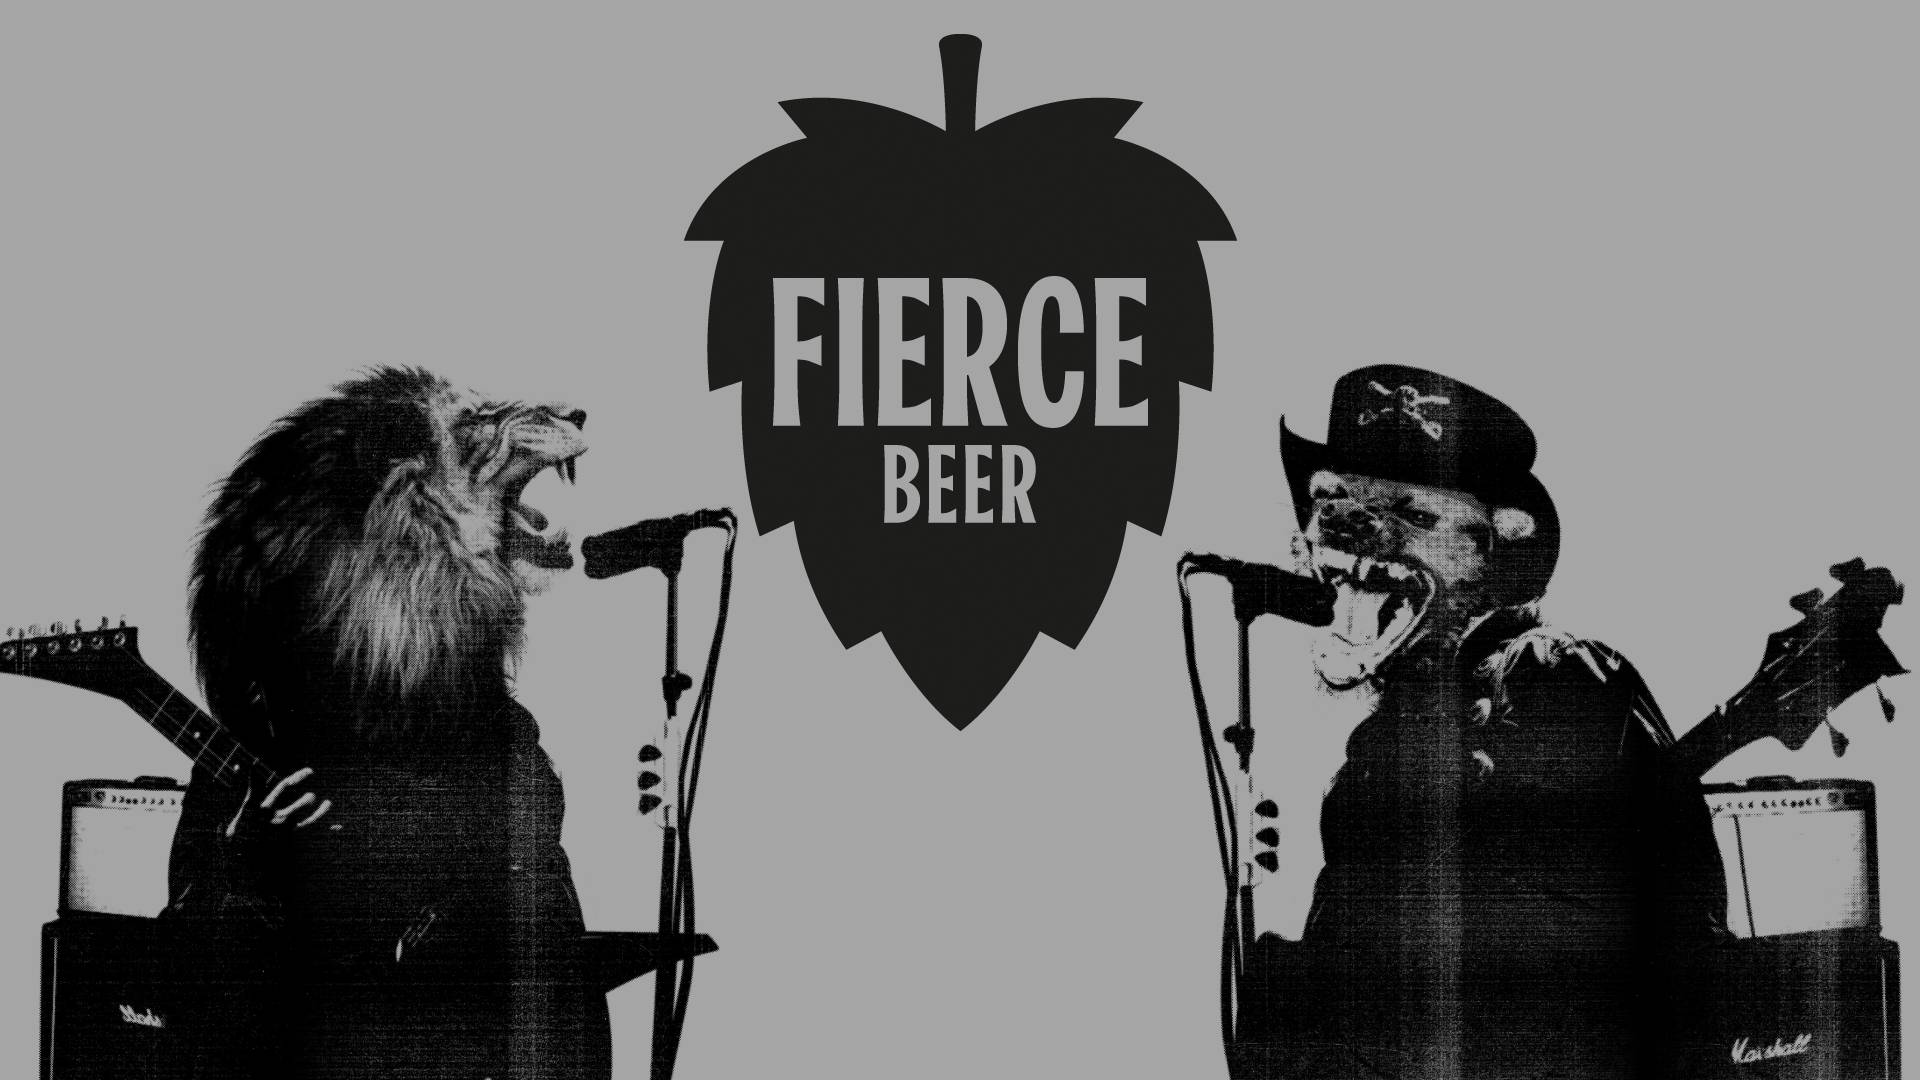 Fierce Beer